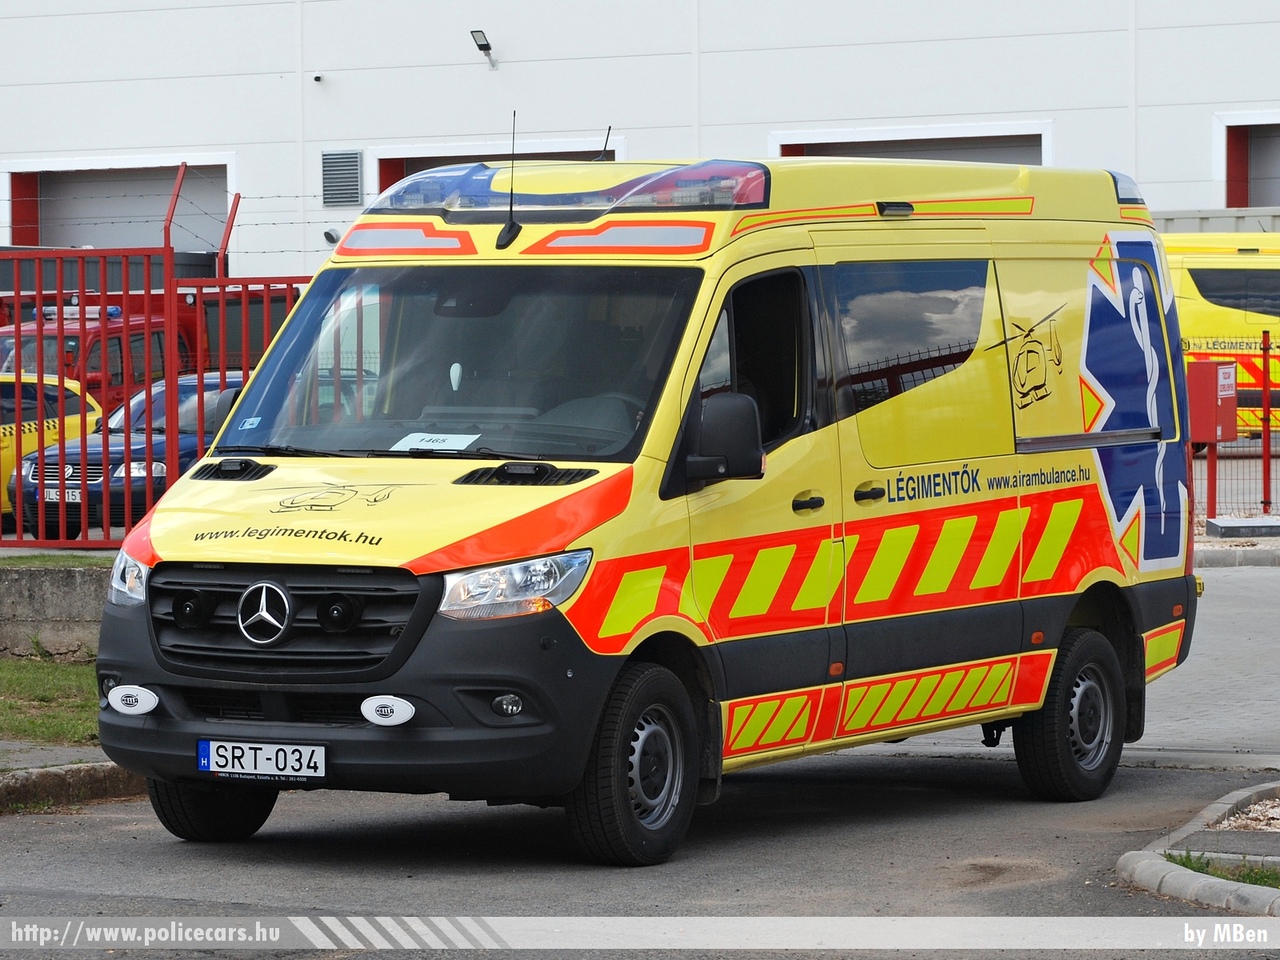 Mercedes Sprinter III, Magyar Légimentõ Nonprofit Kft., fotó: MBen
Keywords: mentő mentőautó magyar Magyarország hungarian Hungary ambulance SRT-034